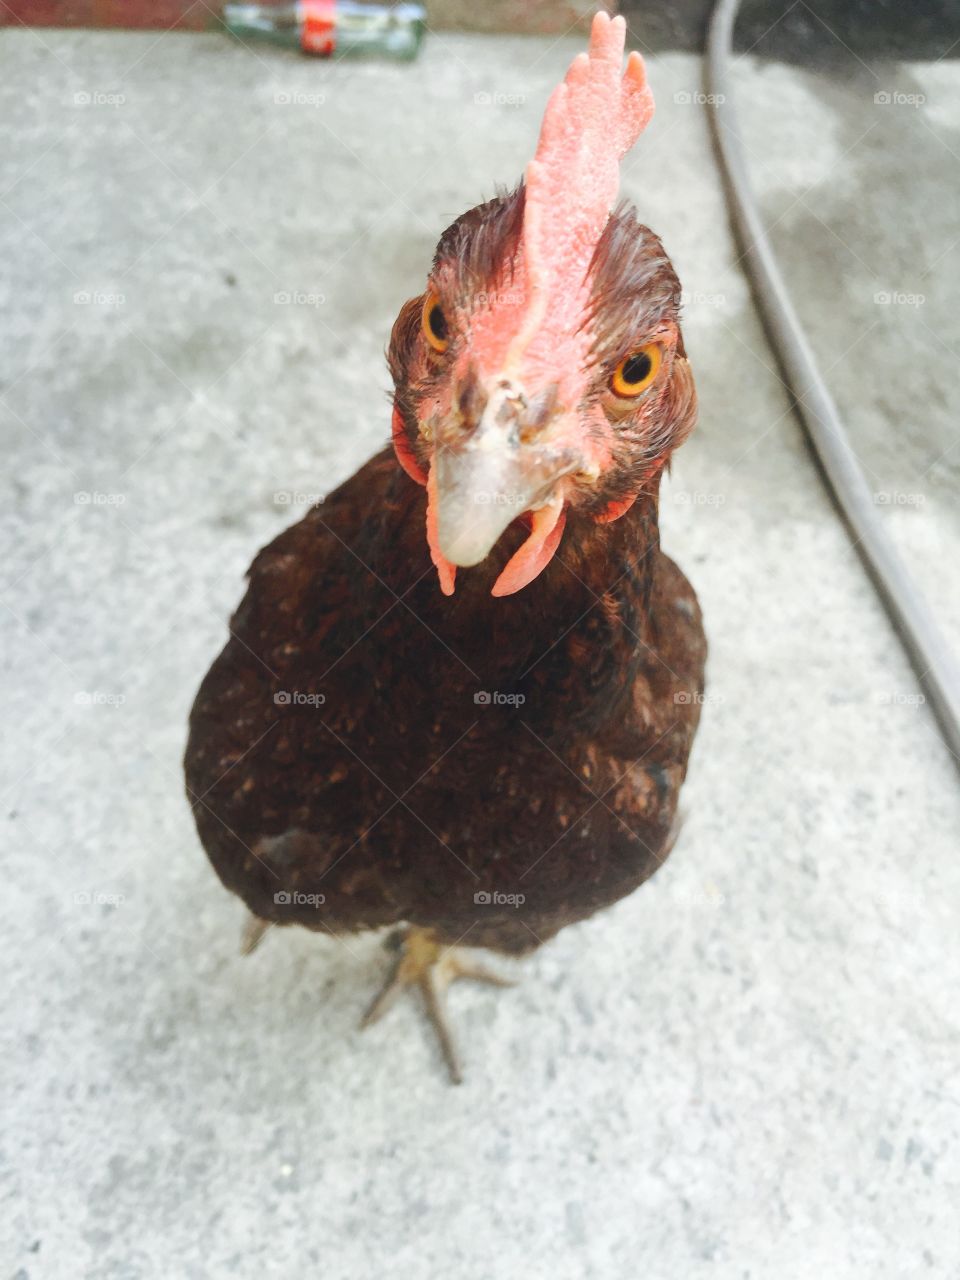 Chicken selfie . Neighbors pet